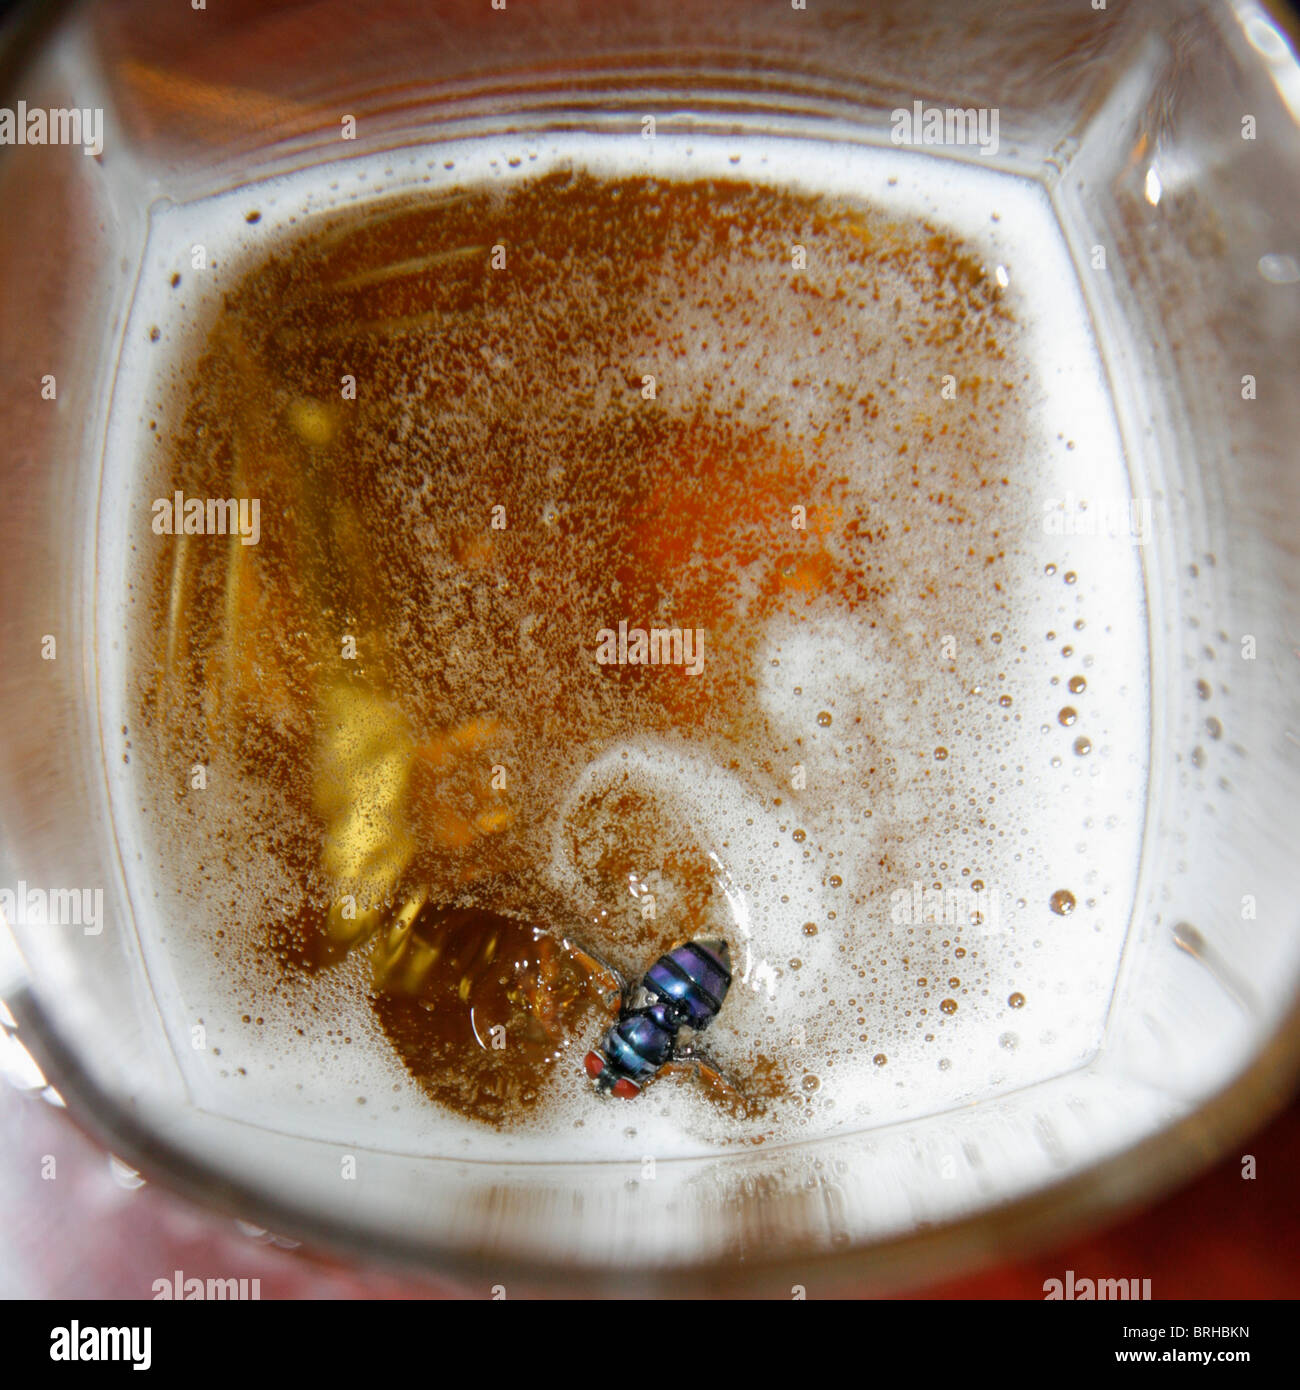 Eine Fliege in einem Glas Bier Stockfotografie - Alamy